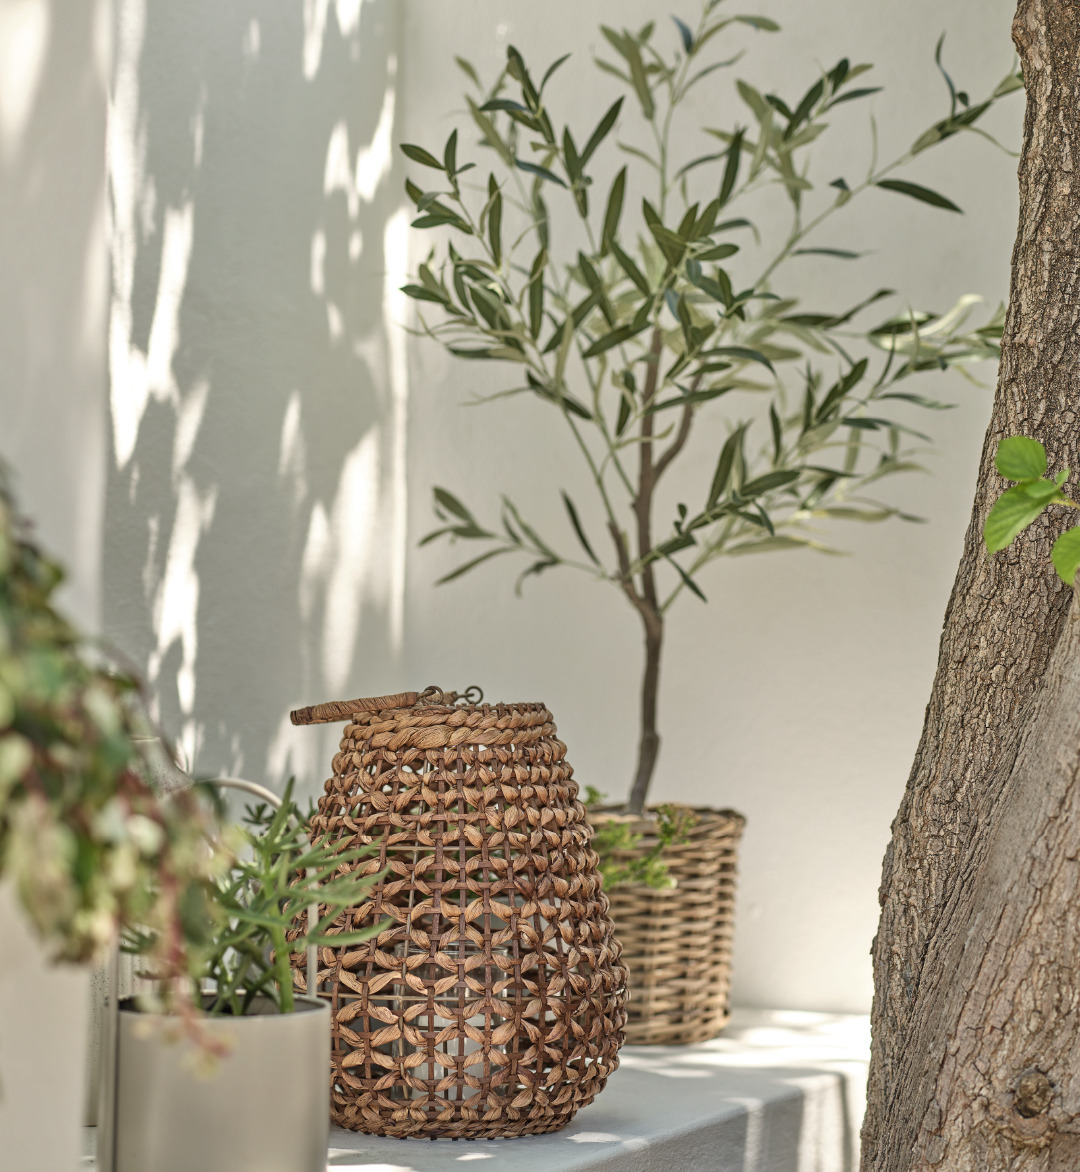 Ліхтар ROVTERN та штучна рослина HAVHEST створюють атмосферу затишку й гармонії у вашому дворику.